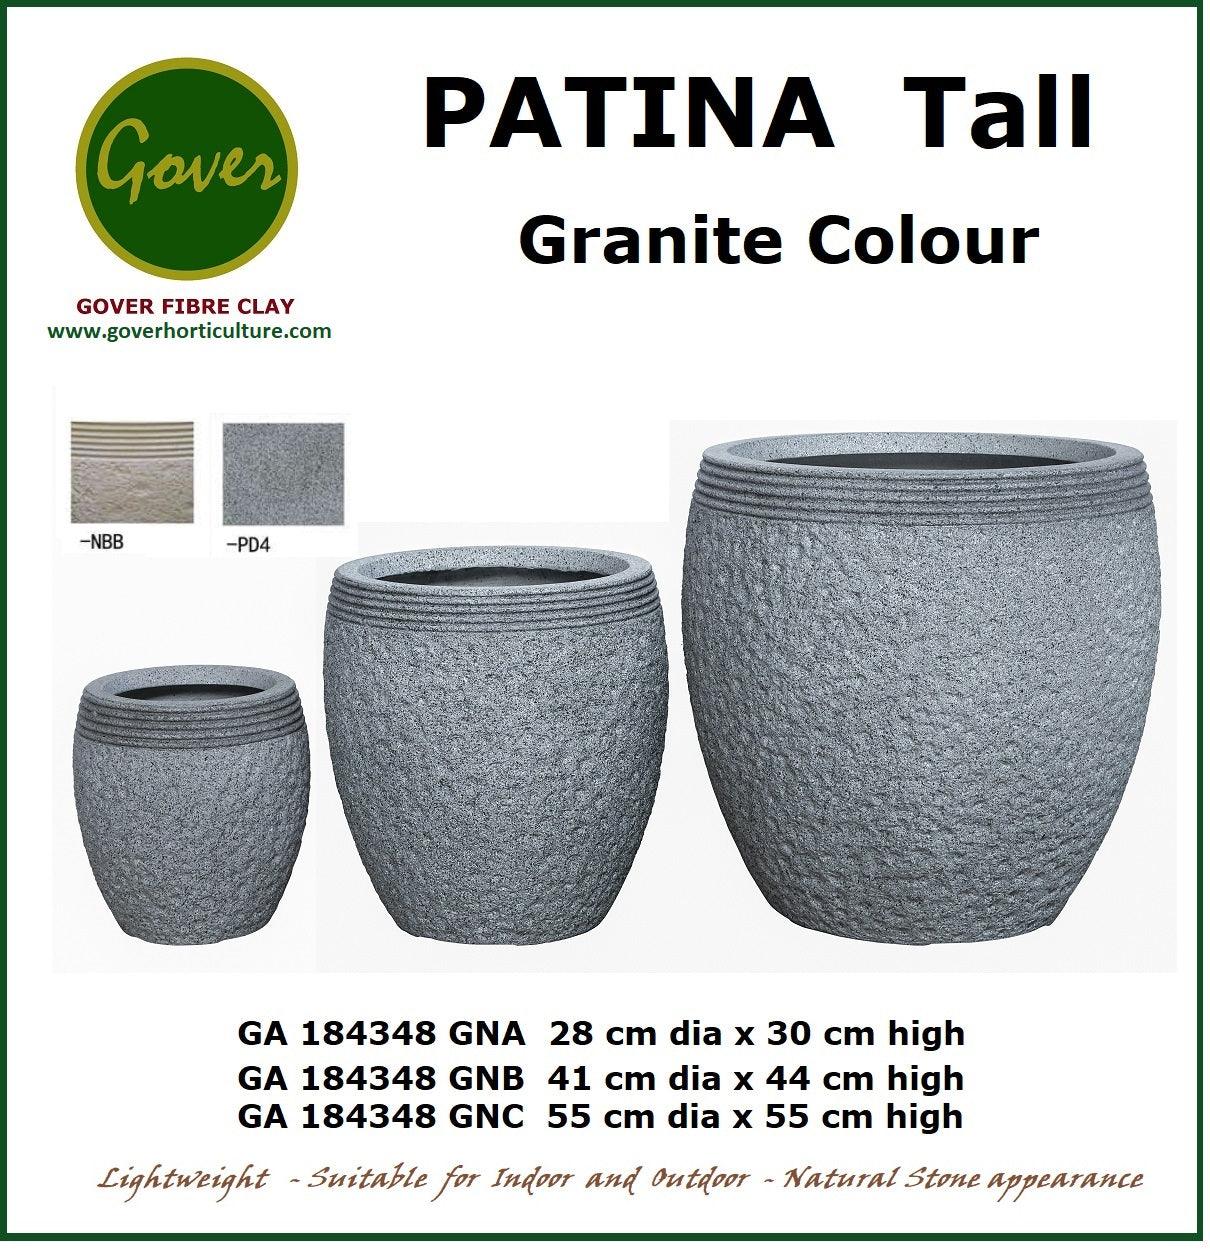 Gover Fibreclay Patina Tall - THE GARDEN CENTRE